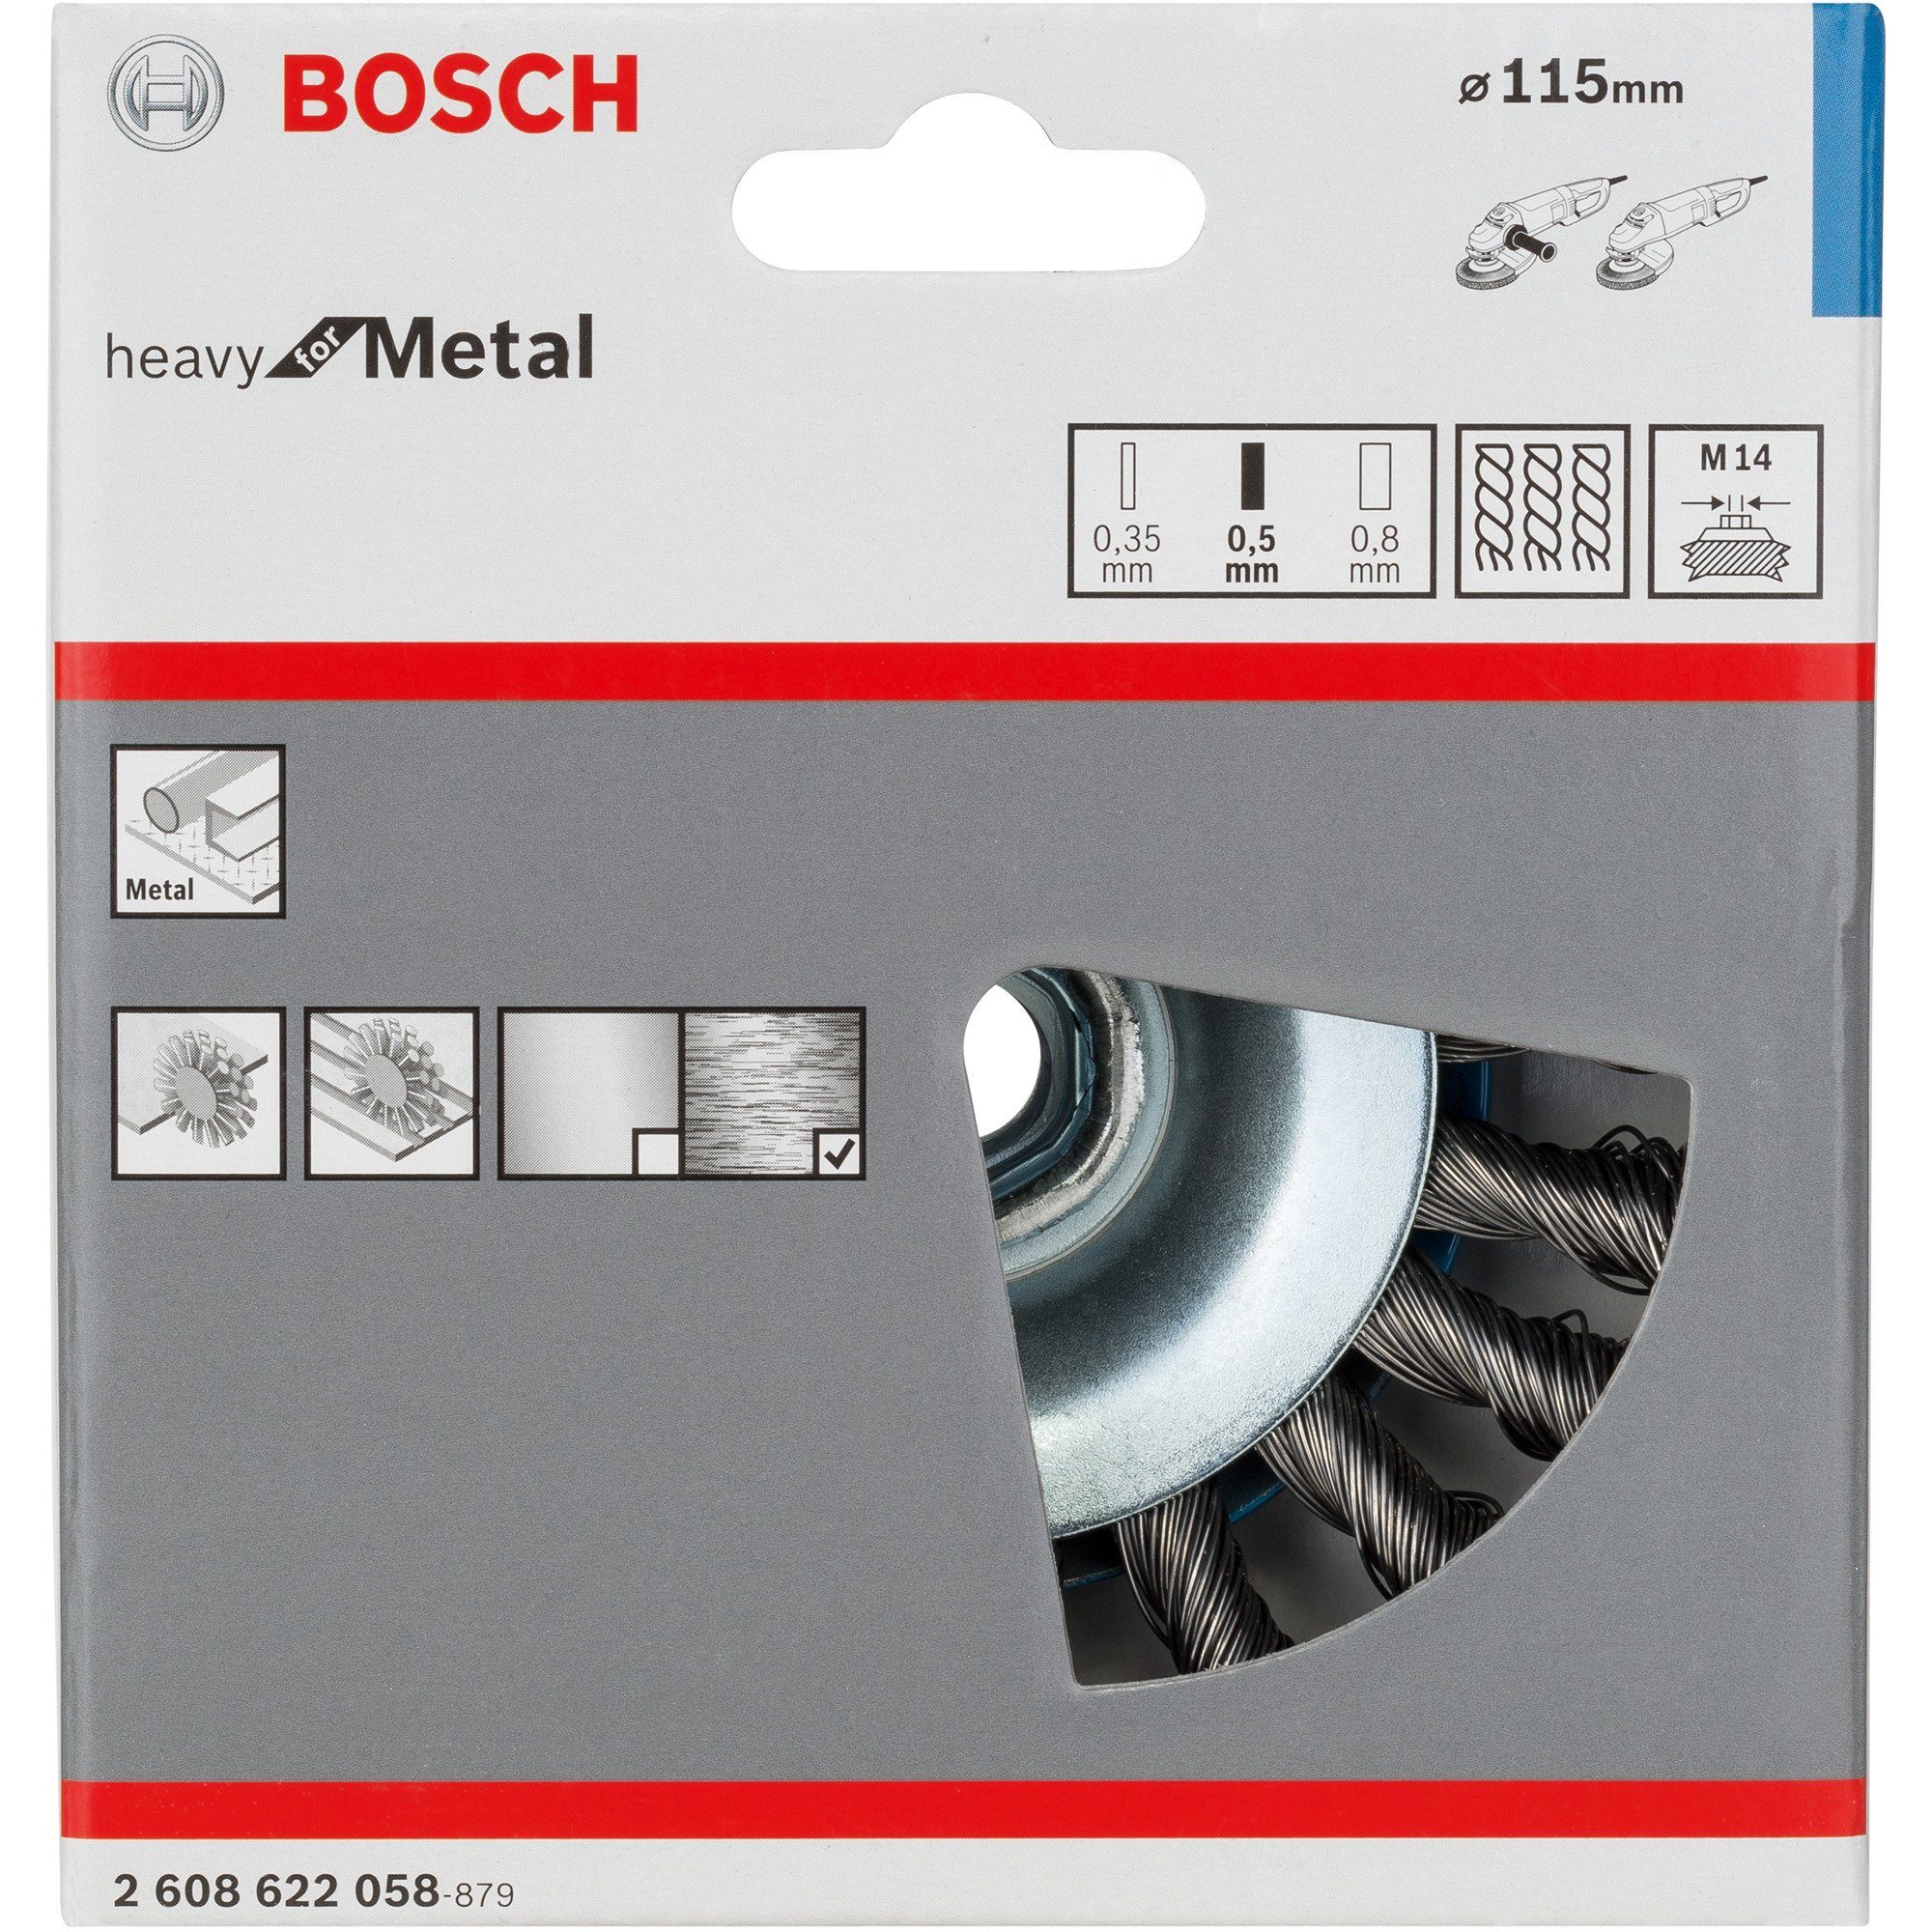 BOSCH Schleifscheibe Bosch Professional Kegelbürste Heavy for Metal, Ø